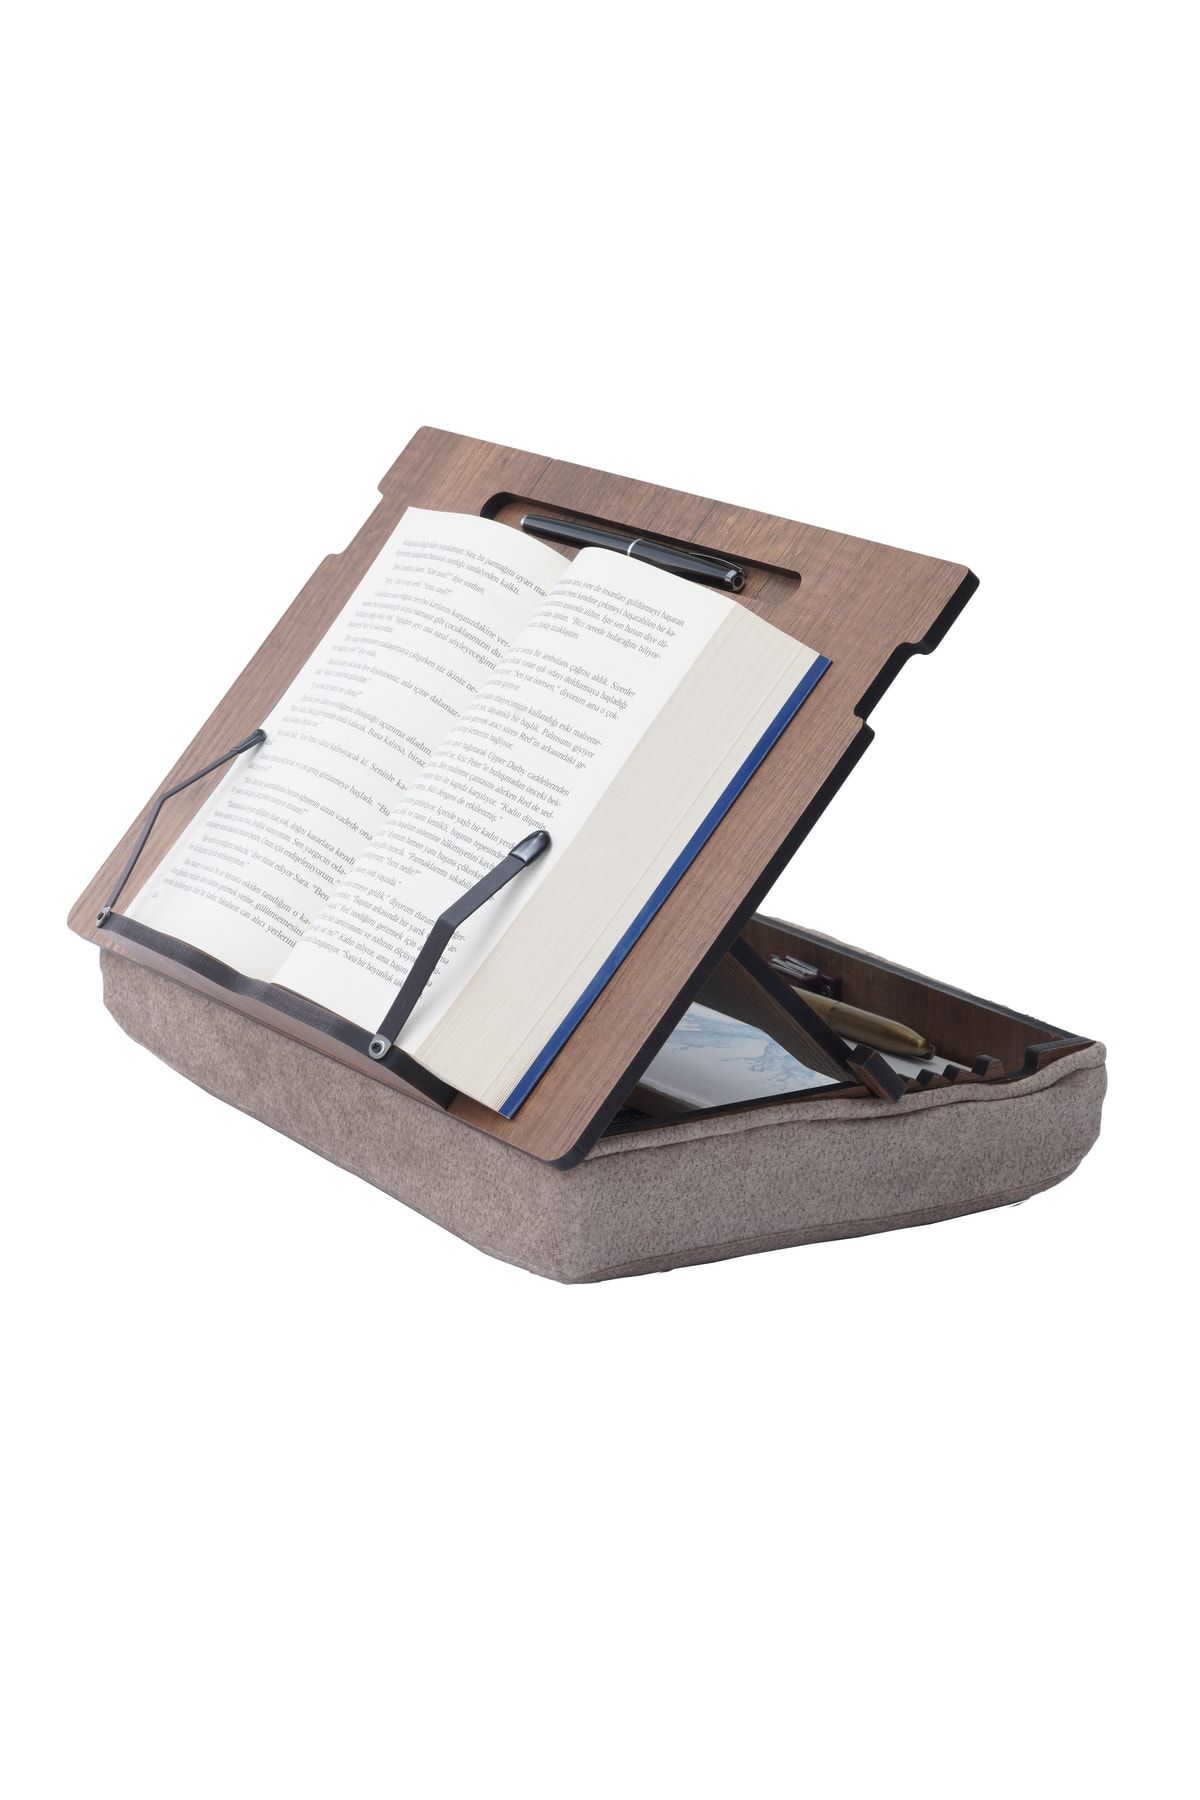 Vigo Wood Minderli Kitap Okuma Standı Ayarlanabilir Çizim Standı Laptop Sehpası Çalışma Sehpası